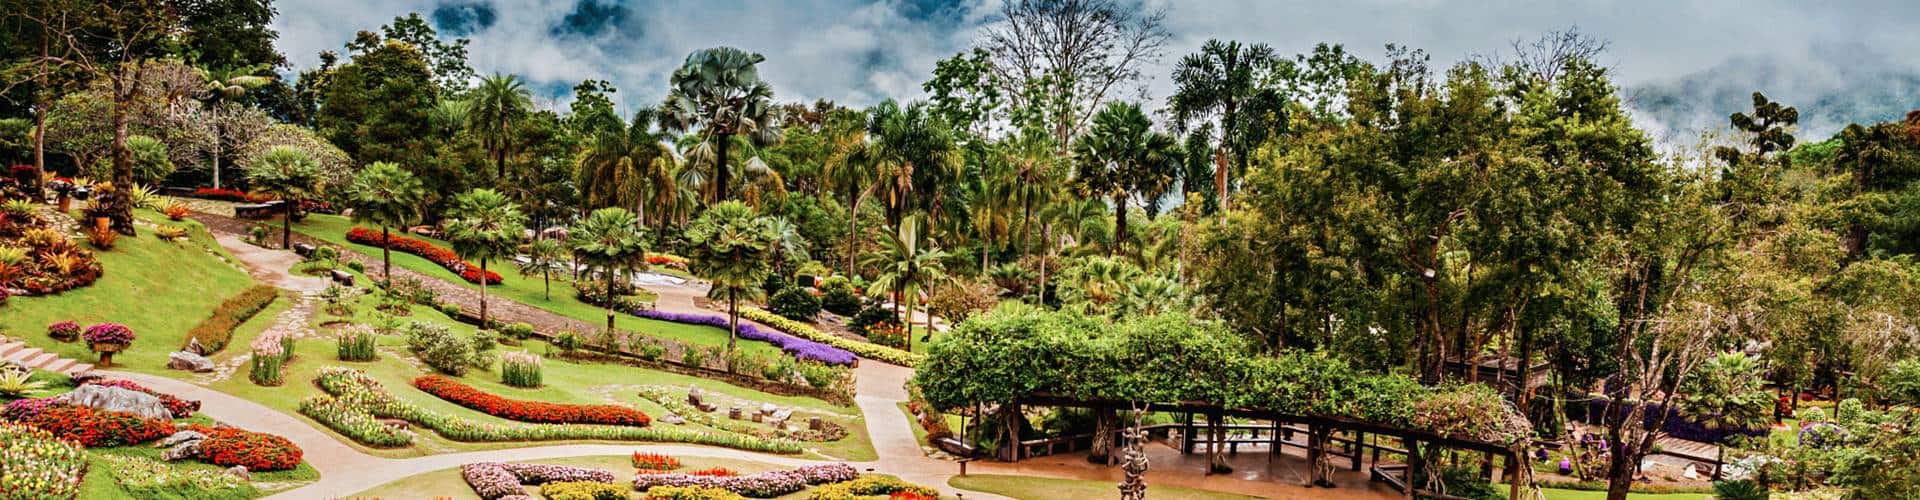 Mae Fa Luang Garden